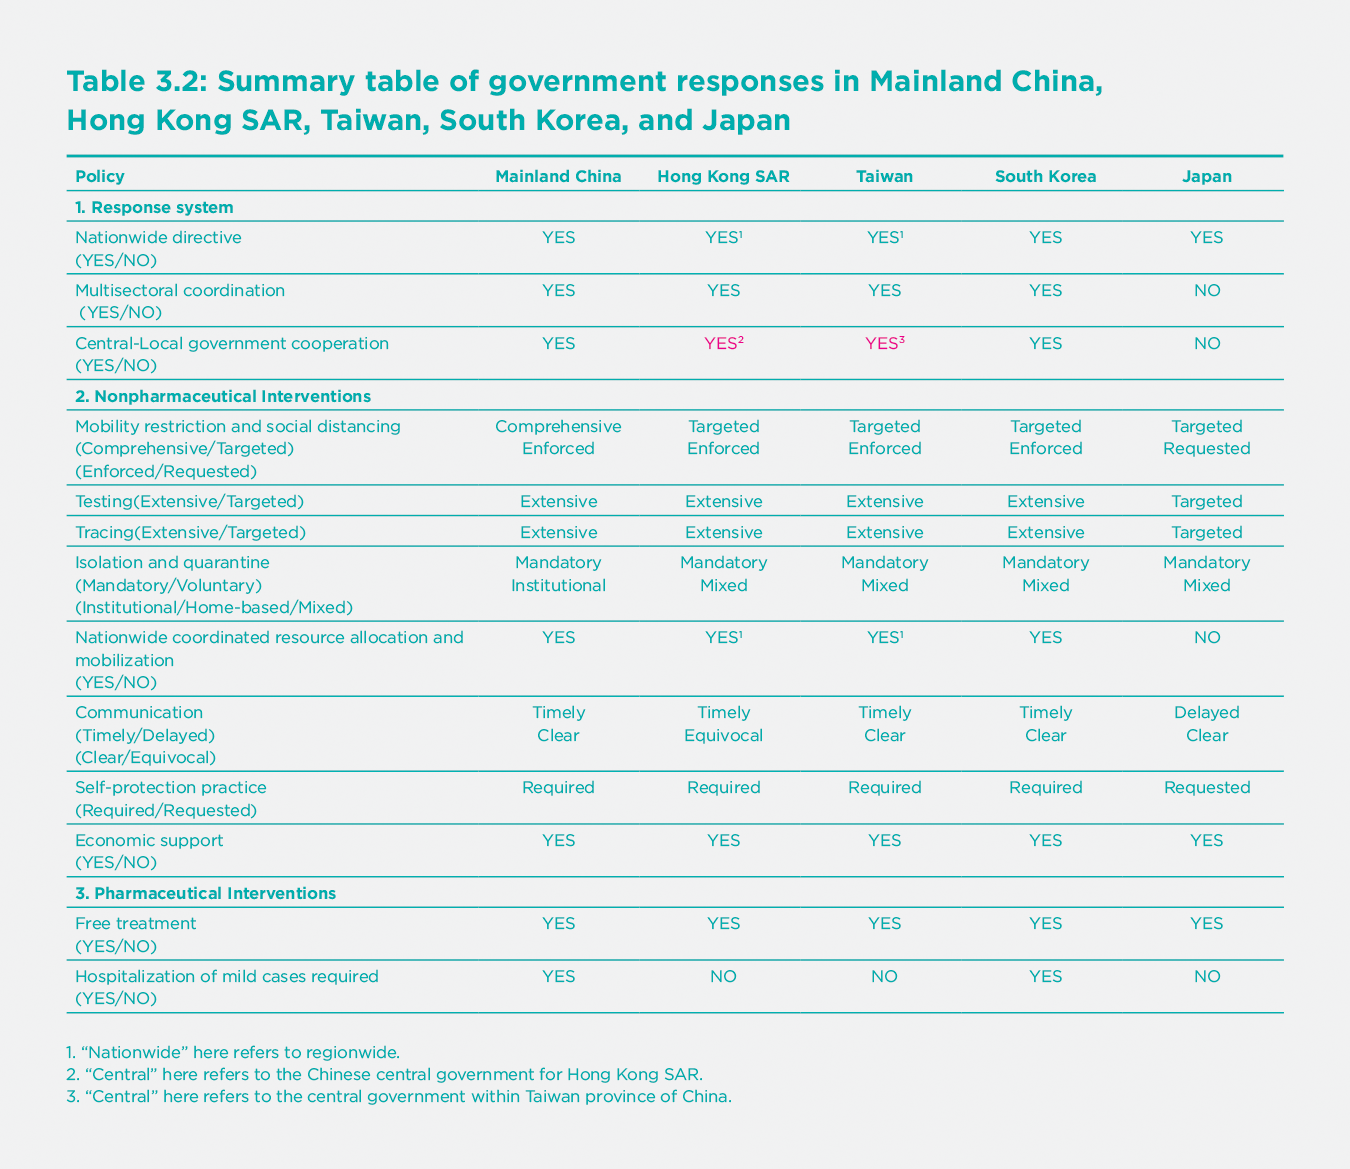 Table 3.2: Summary table of government responses in Mainland China, Hong Kong SAR, Taiwan, South Korea, and Japan